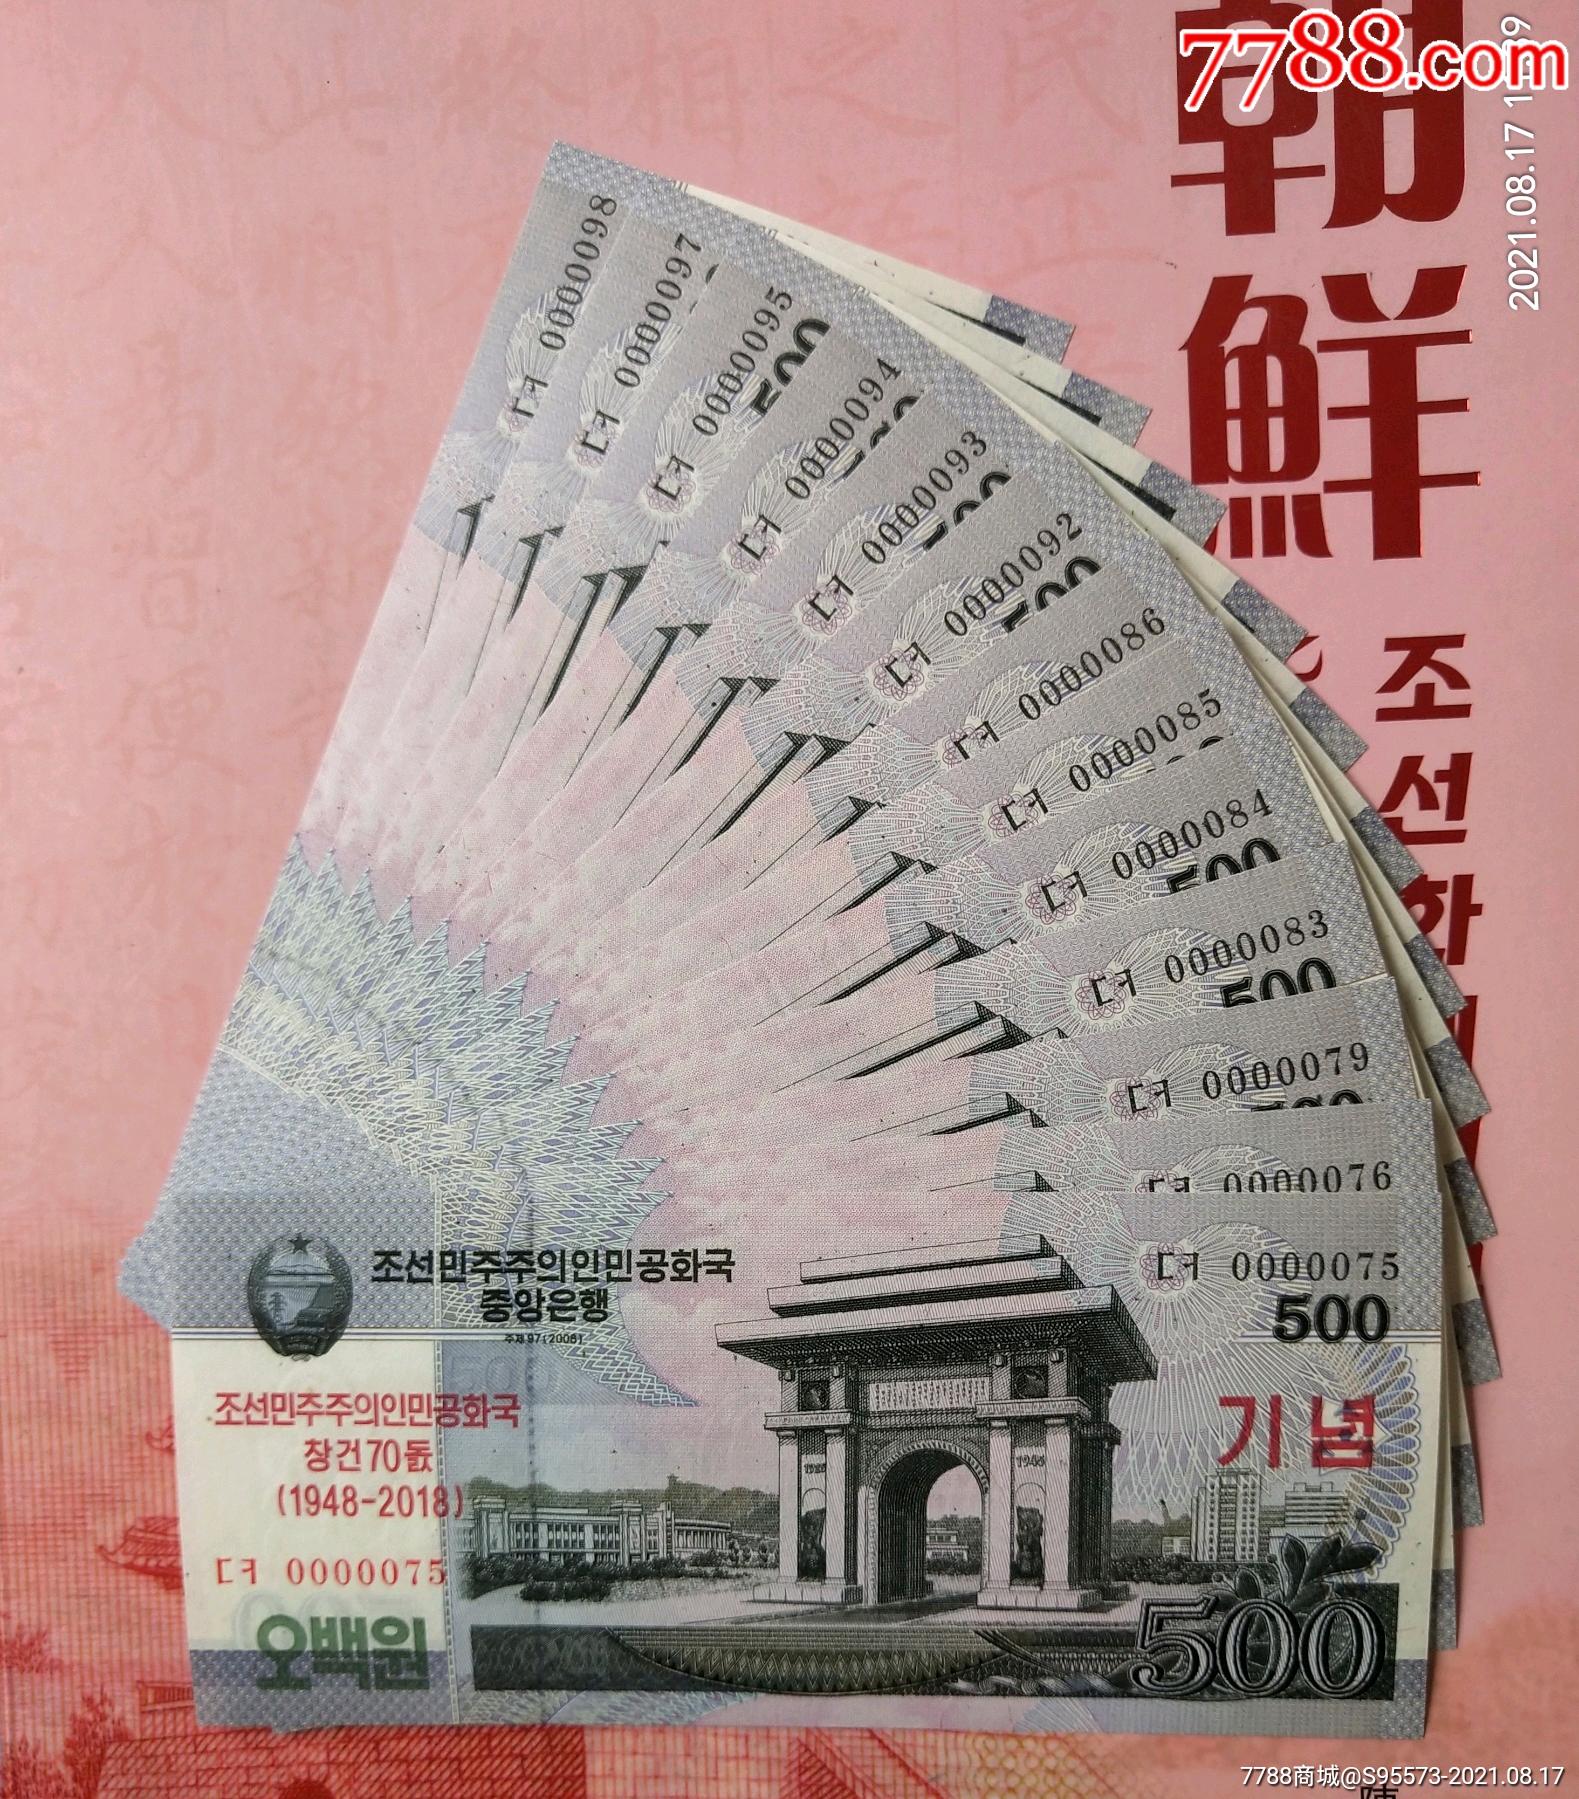 朝鲜纪念钞2018年500元,全新十位数小号码,15元一张任选